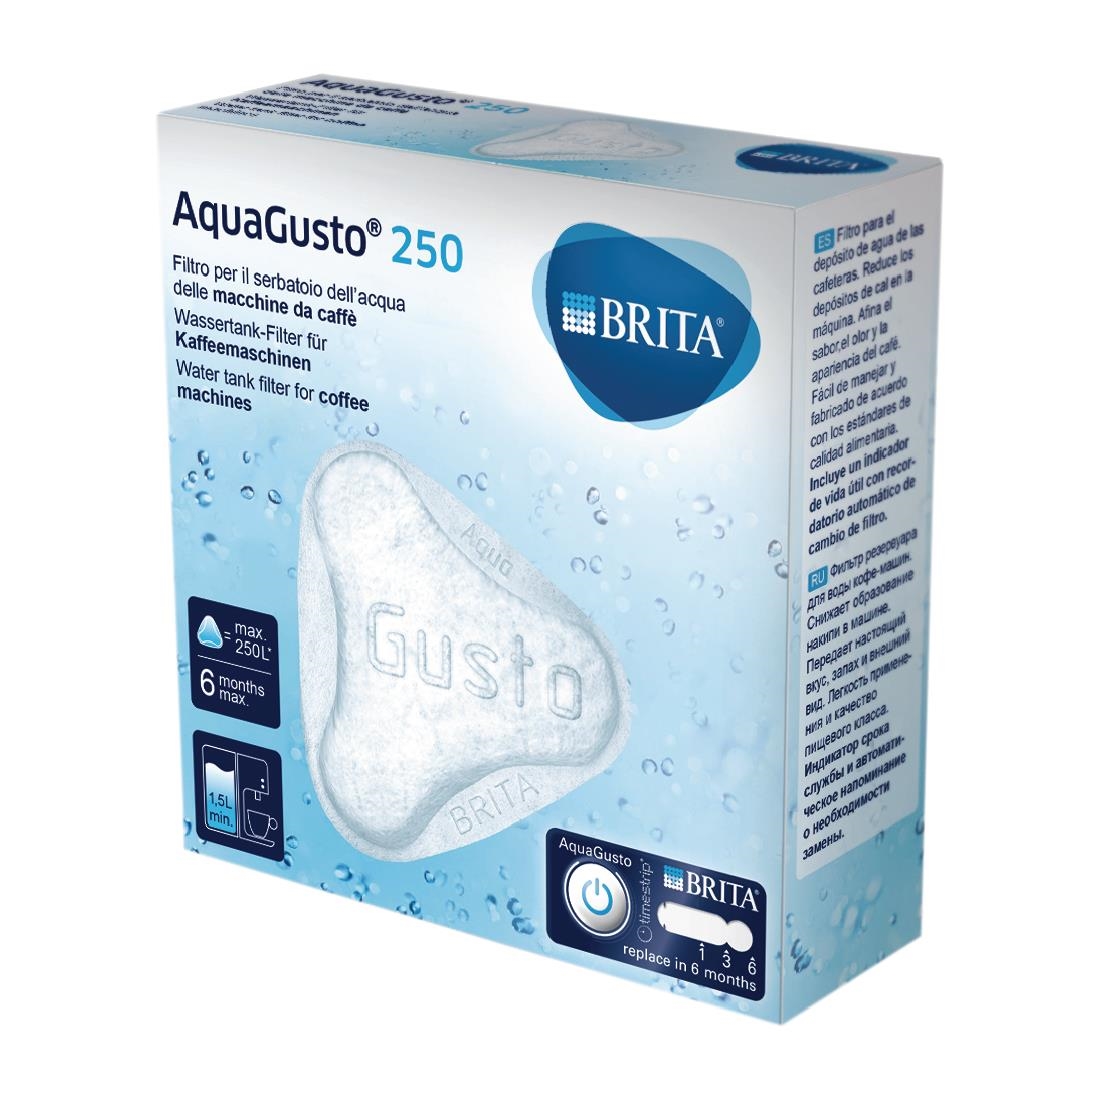 Brita AquaGusto 250 Water Filter